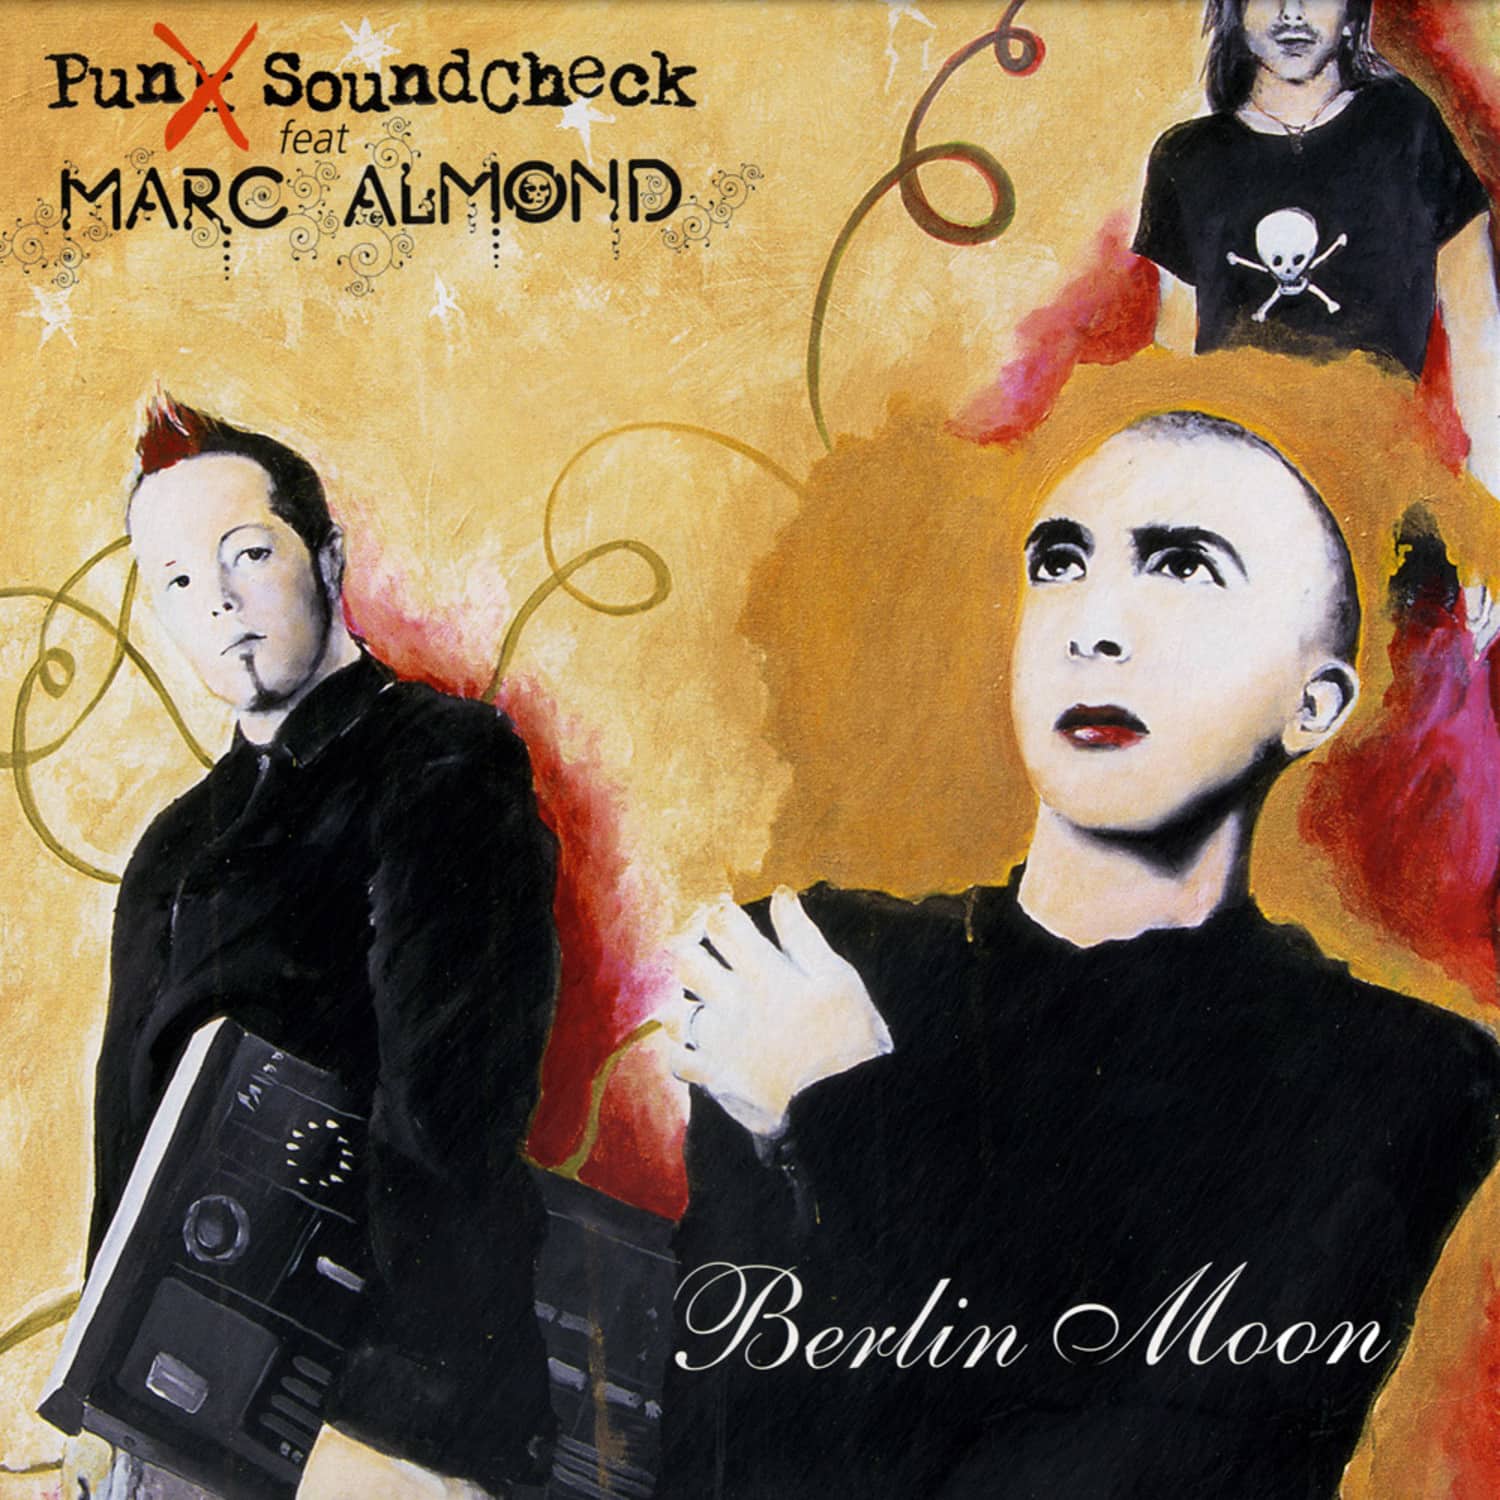 Punx Soundcheck feat Marc Almond - BERLIN MOON 